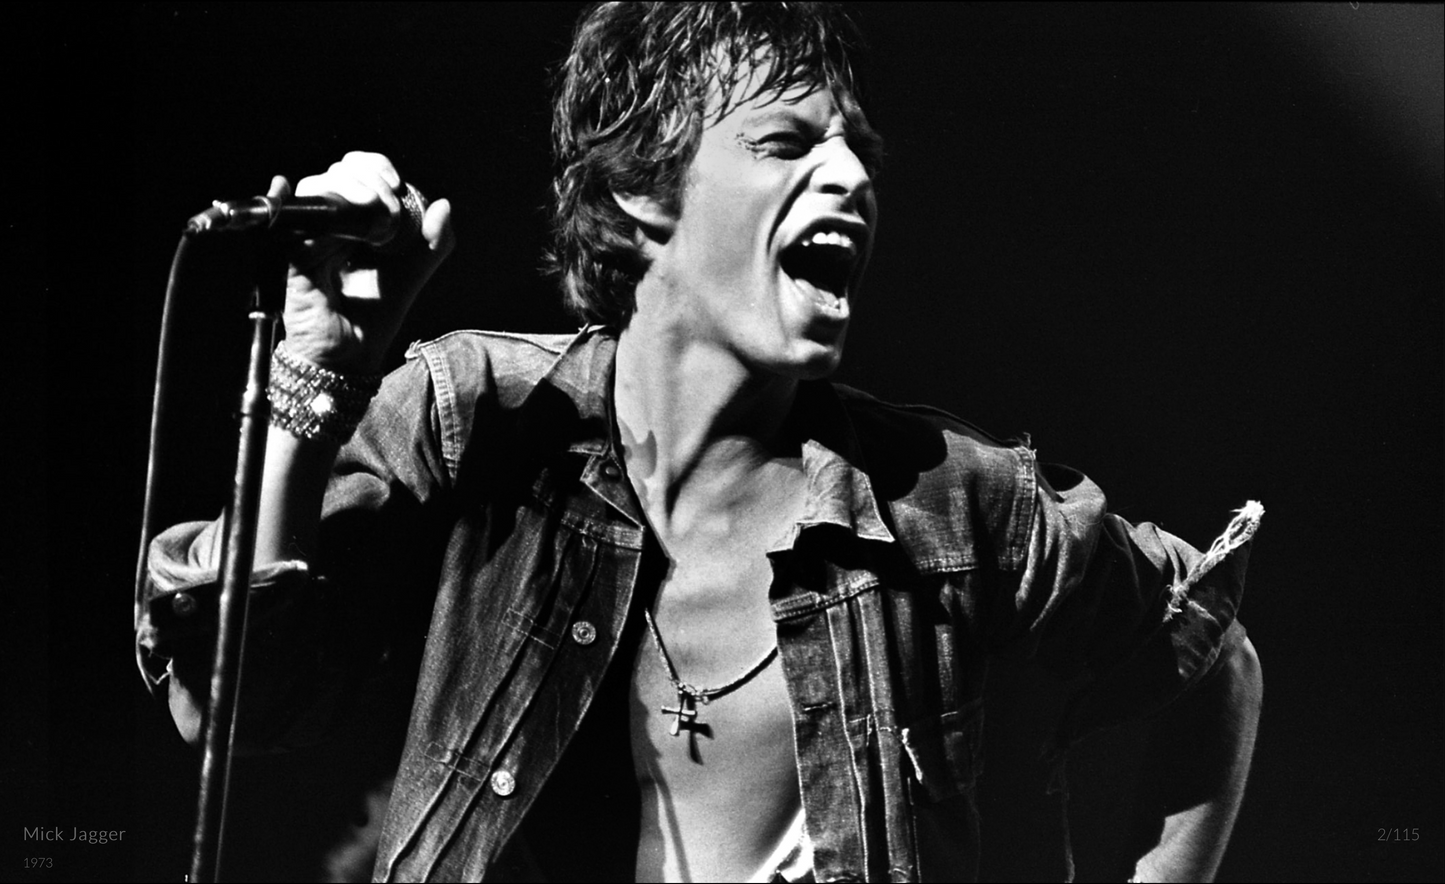 Screaming Mick Jagger 1973 - Richard Upper